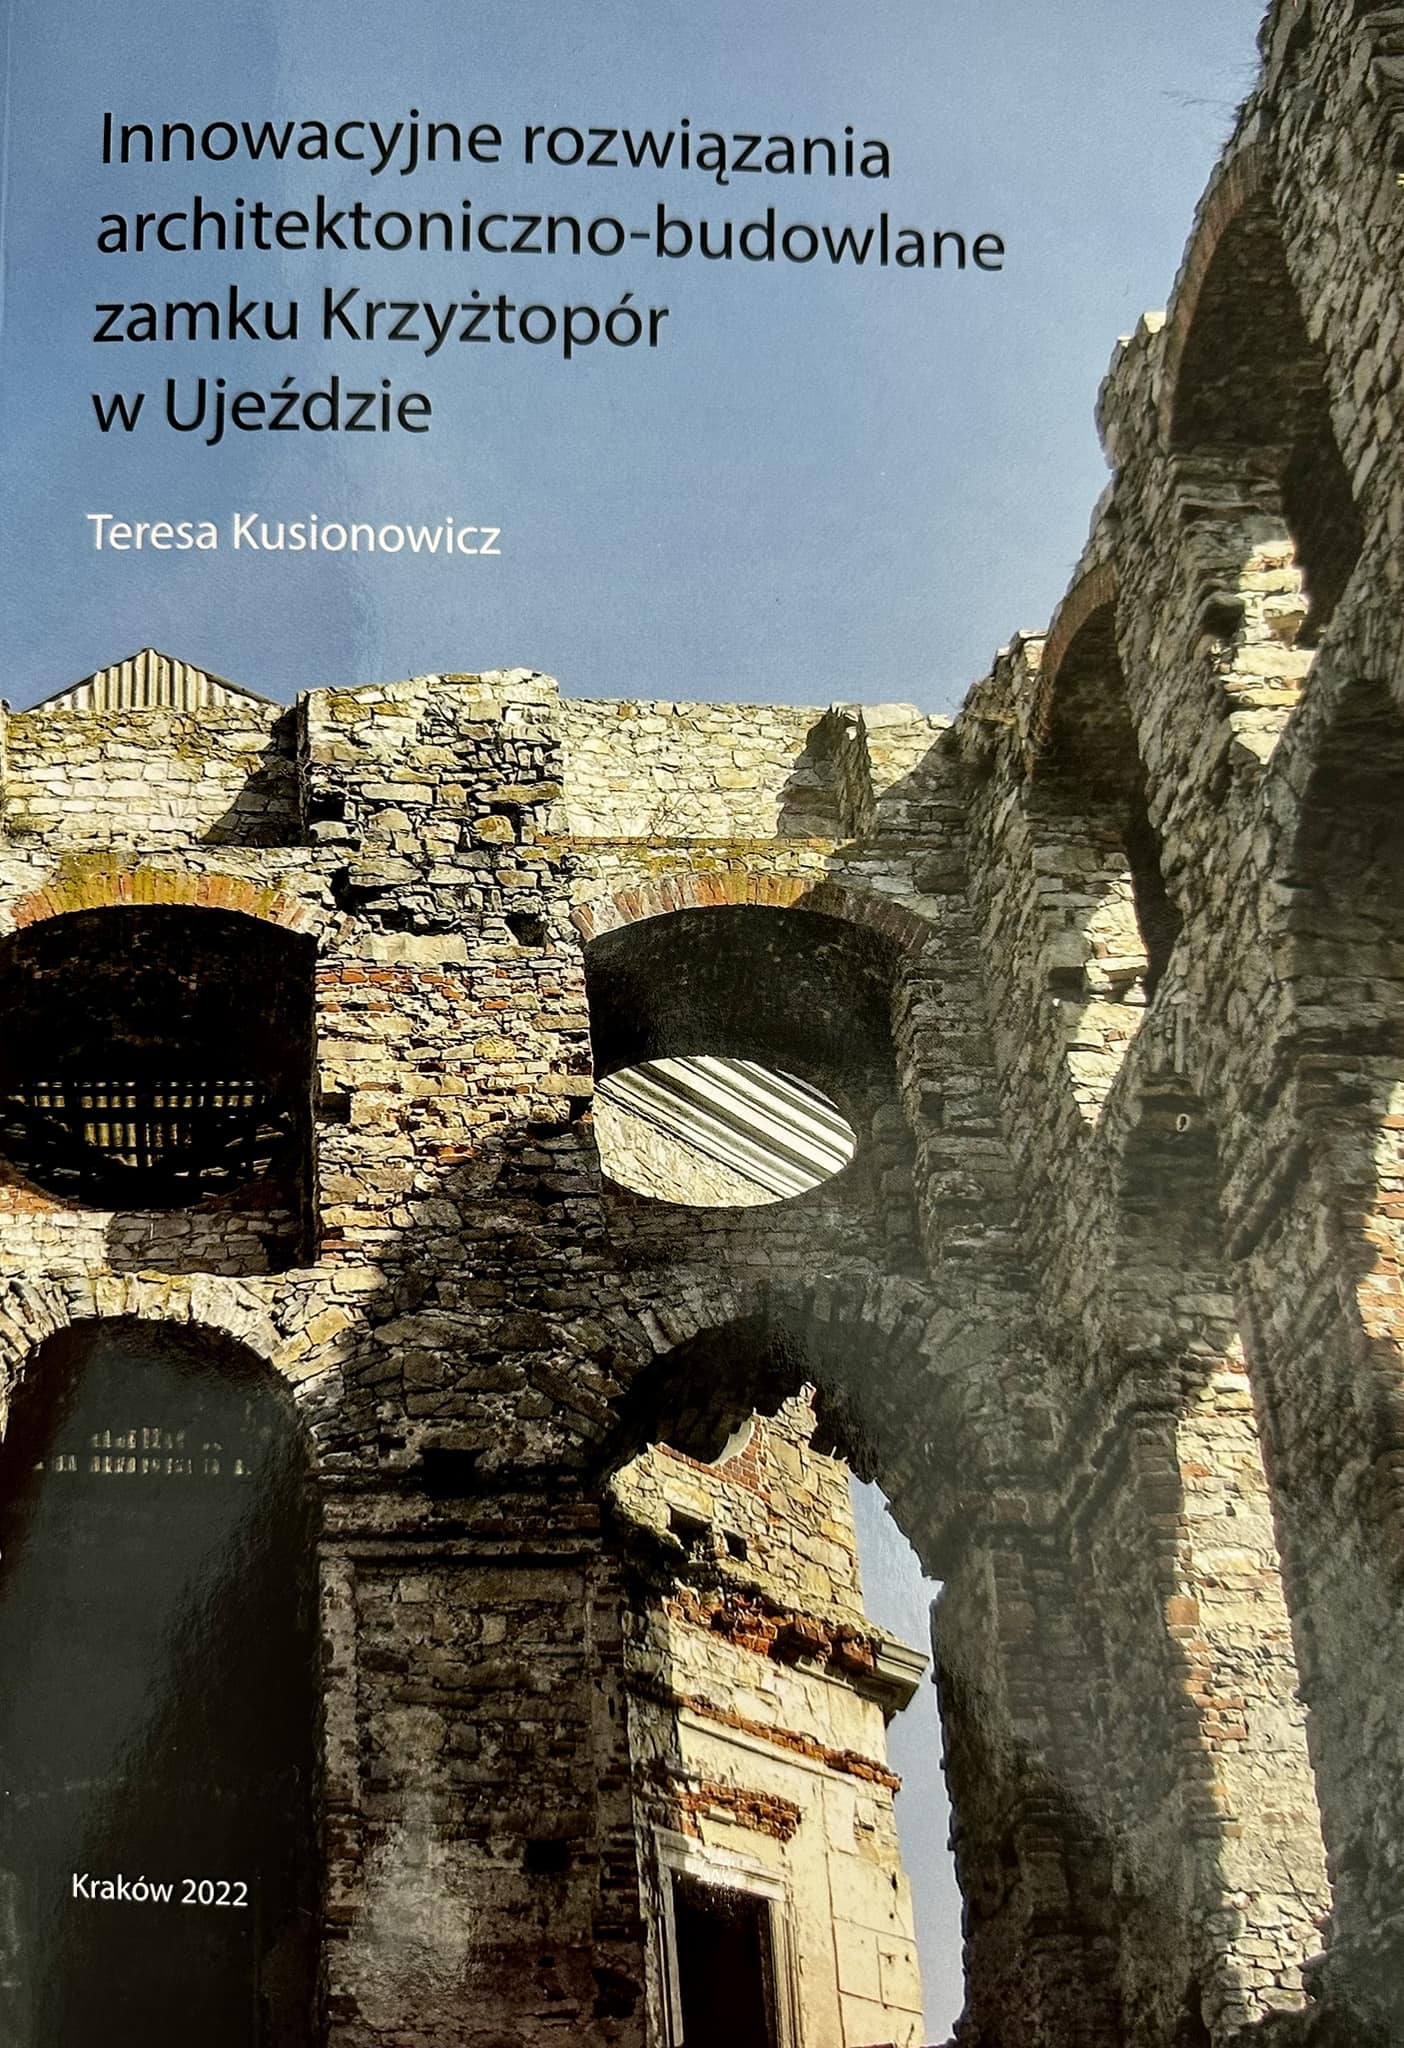 Okładka książki to zdjęcie fragmentu ściany zamku Krzyżtopór. Na górze znajduje się tytuł książki i nazwisko autora, a na dole napis Kraków 2022. 